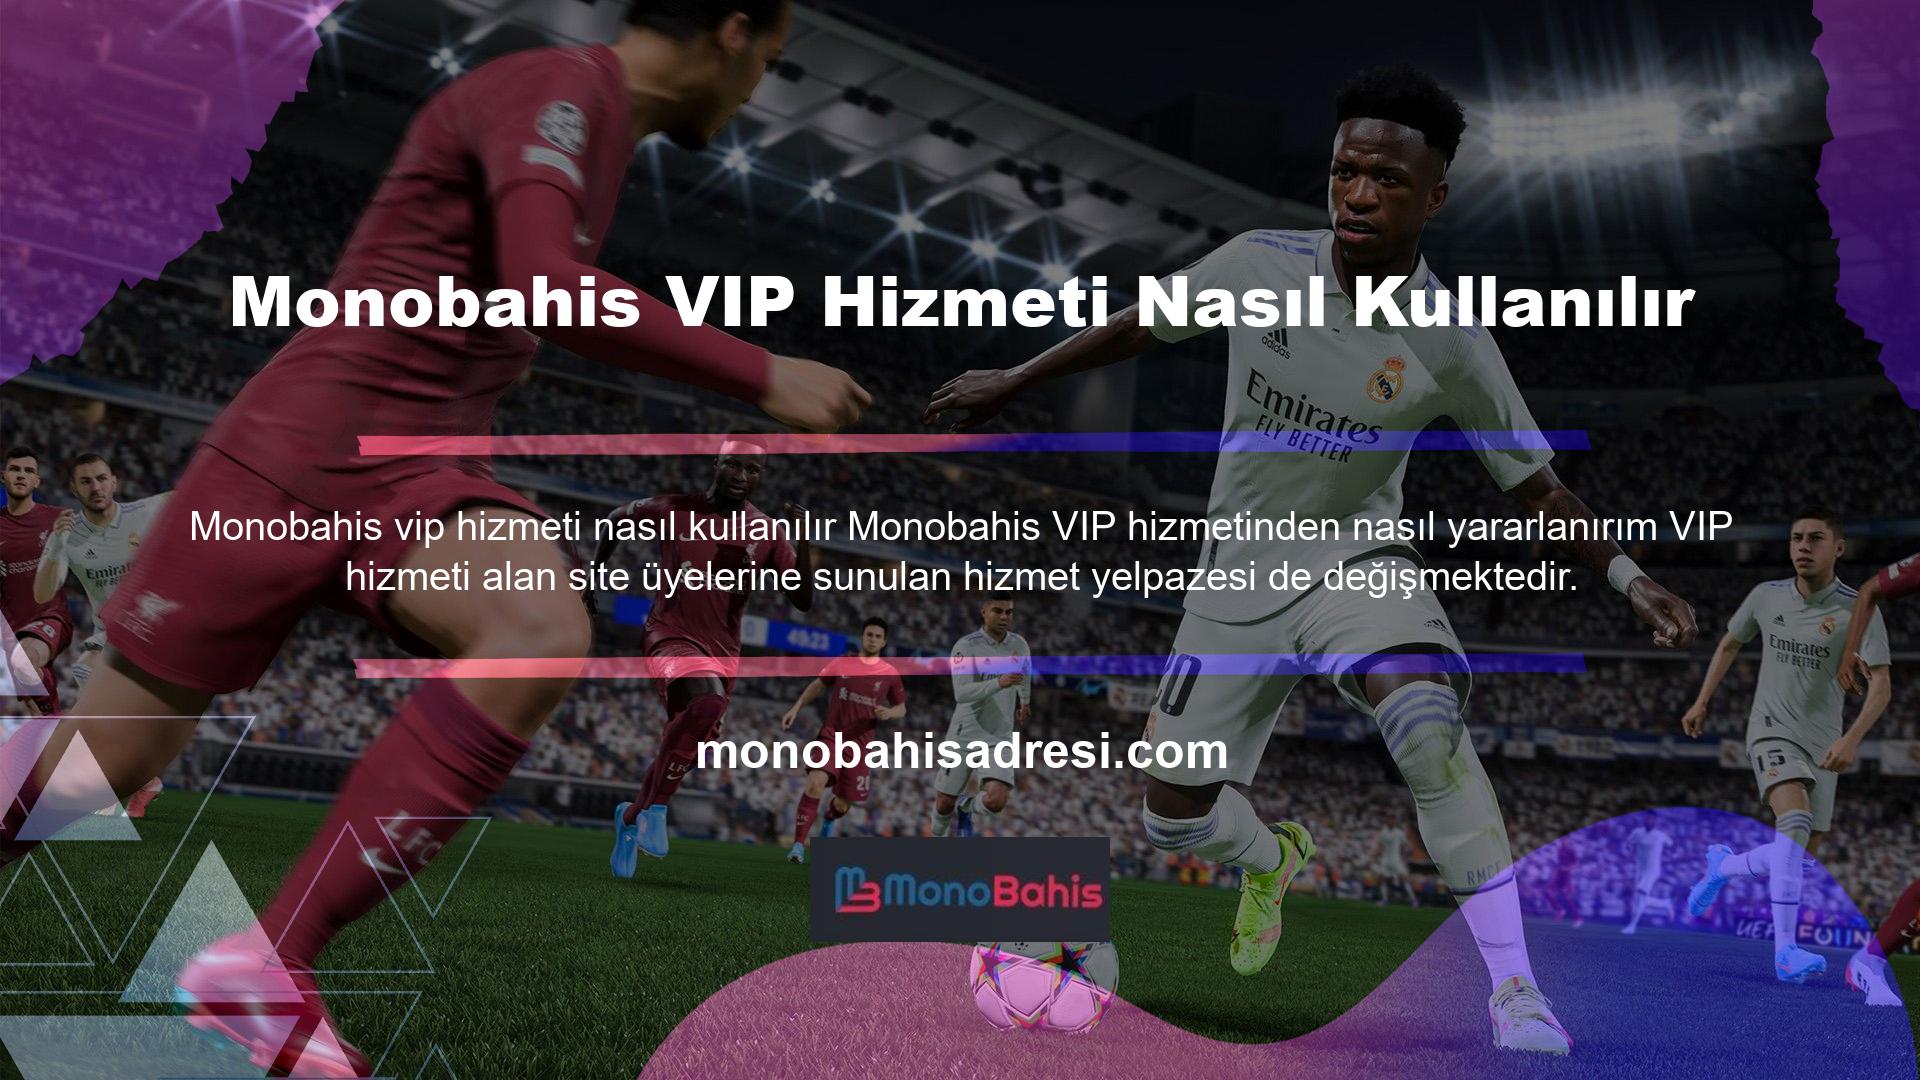 Monobahis, VIP hizmet programı ile ilgili olarak üyelerine bireysel destek sağlamaktadır